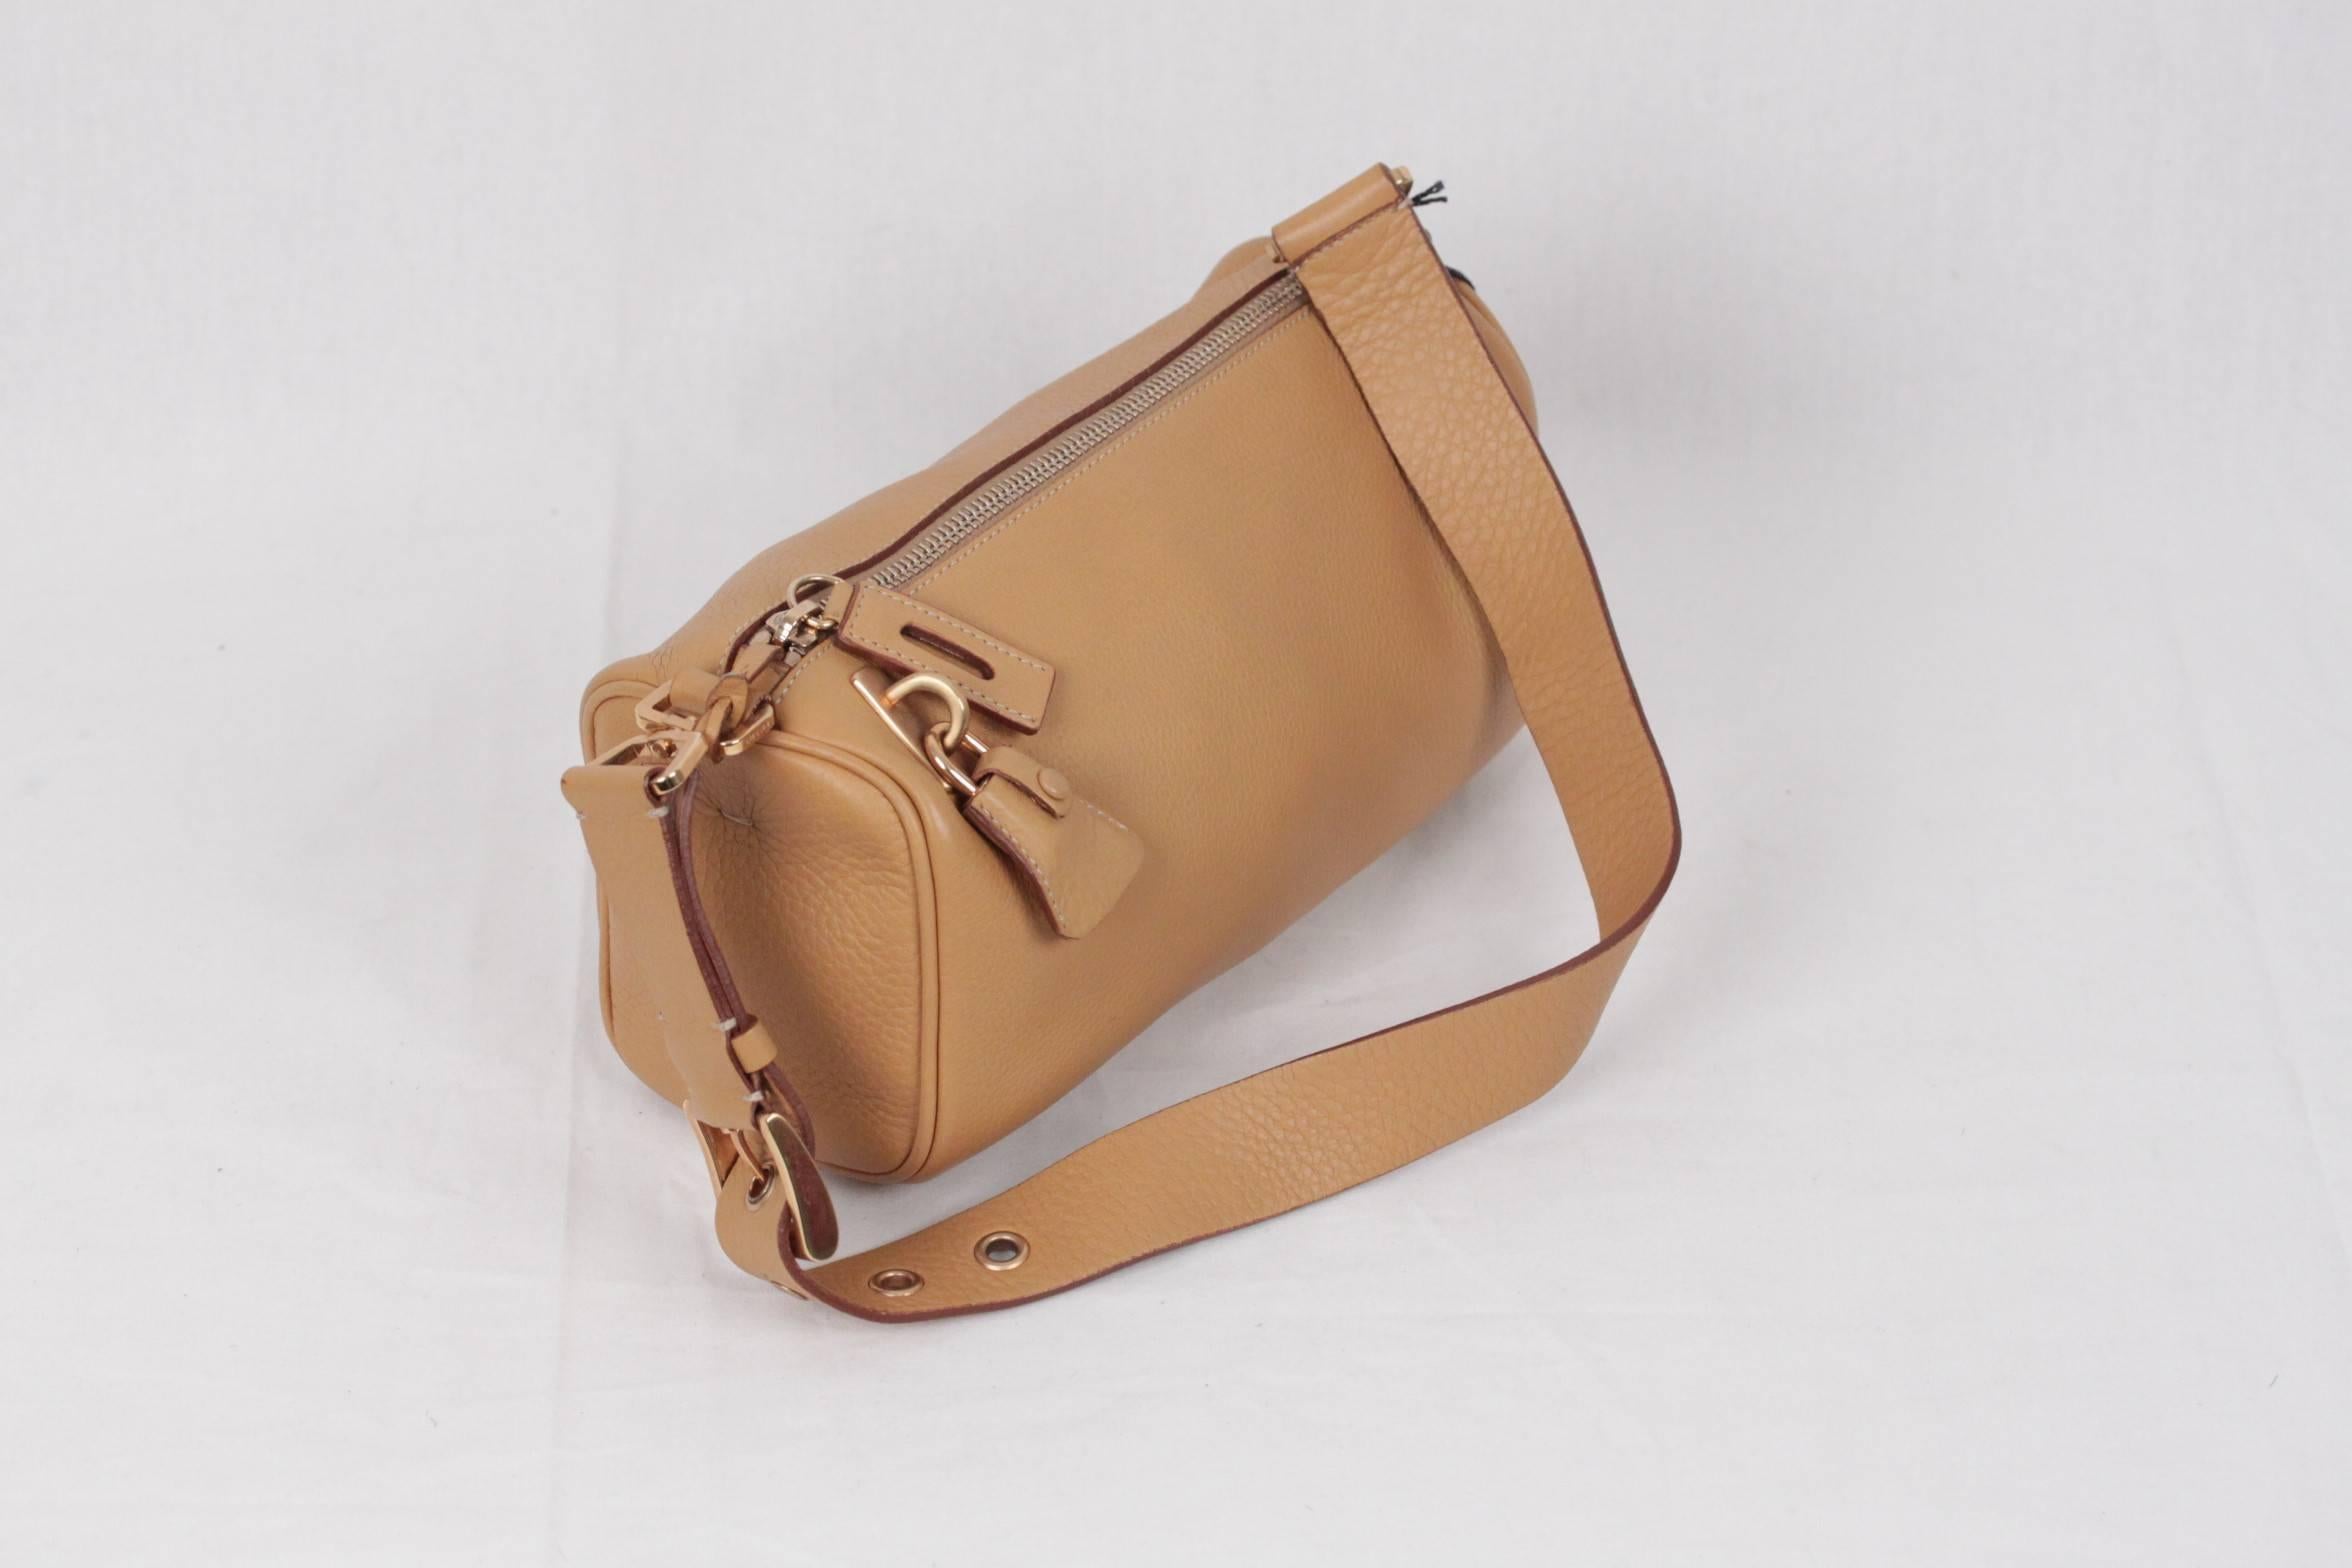 Women's PRADA Tan Leather SHOULDER BAG Handbag w/ PADLOCK